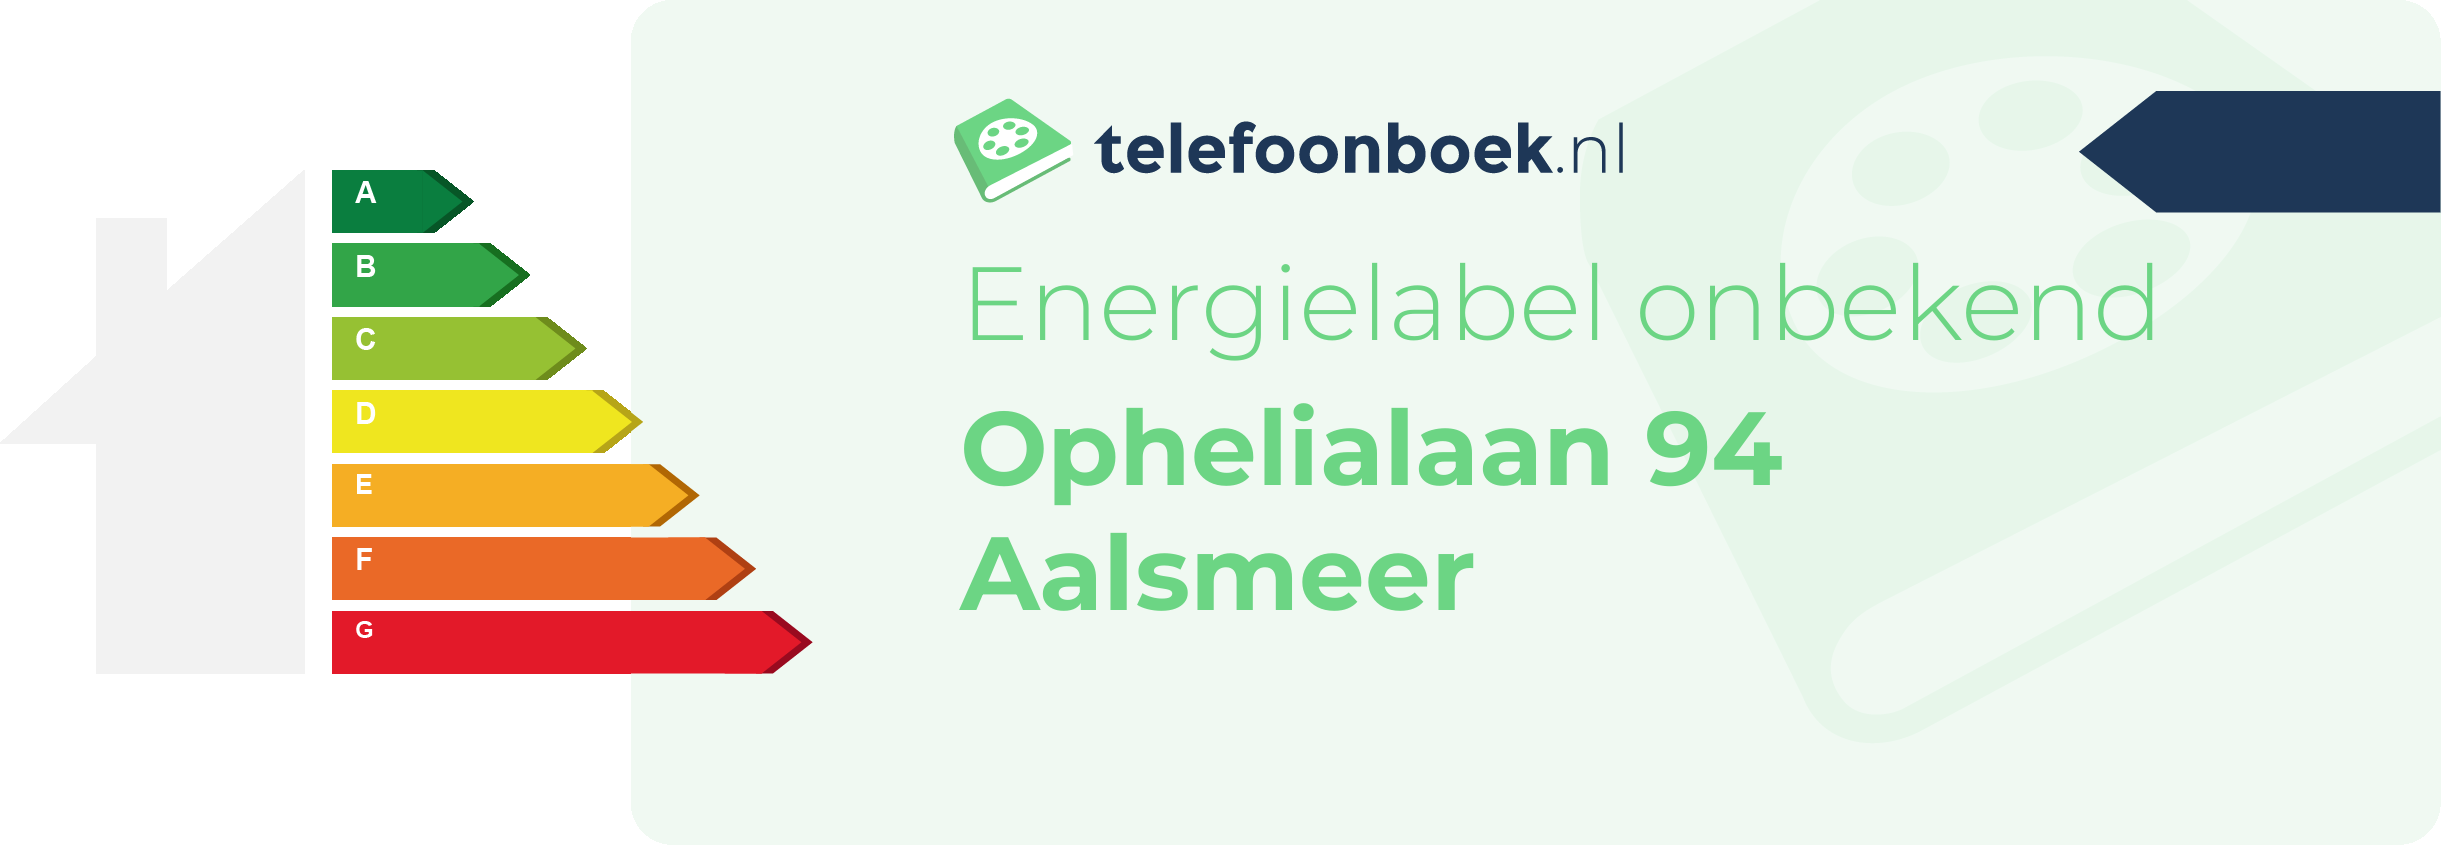 Energielabel Ophelialaan 94 Aalsmeer